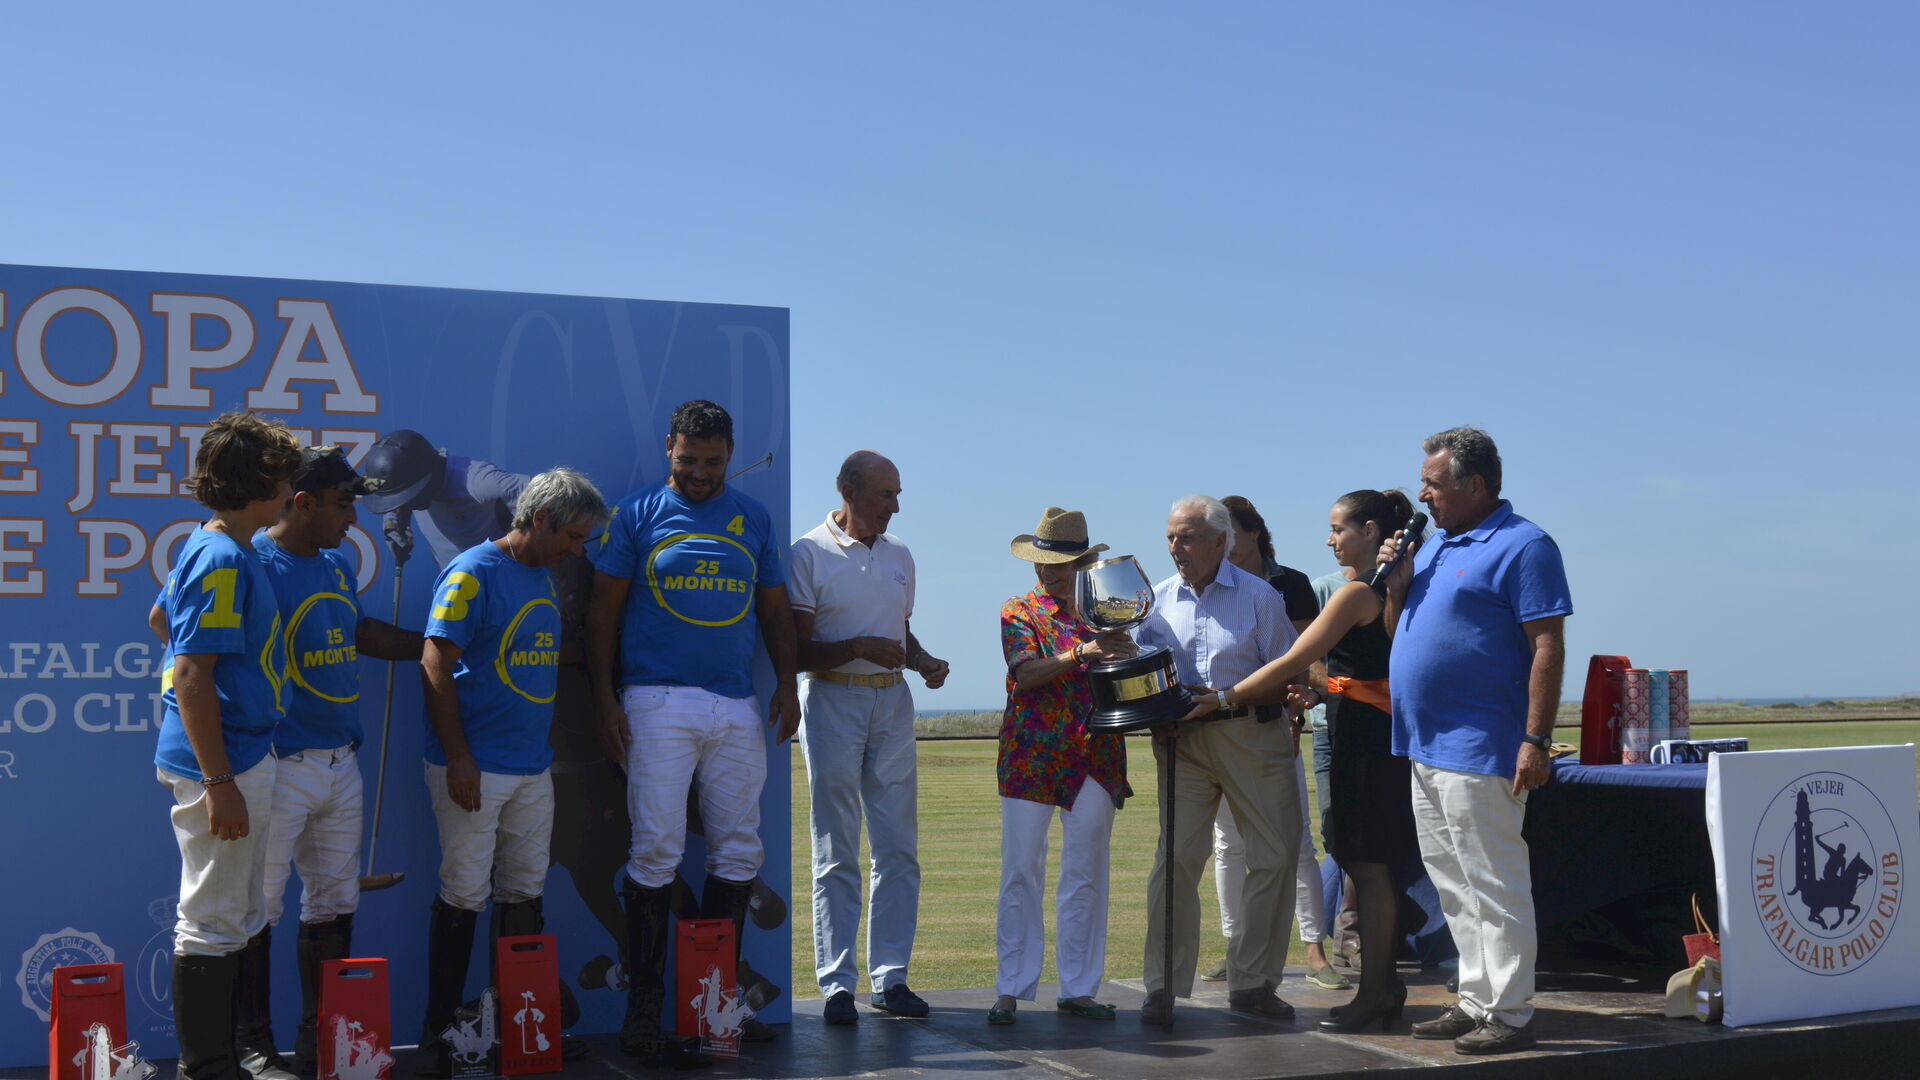 El matrimonio Mora-Figueroa, junto a Beltr&aacute;n Domecq y Lorenzo D&iacute;ez, entregando la copa de Jerez del Polo al equipo ganador &lsquo;25 Montes&rsquo;.